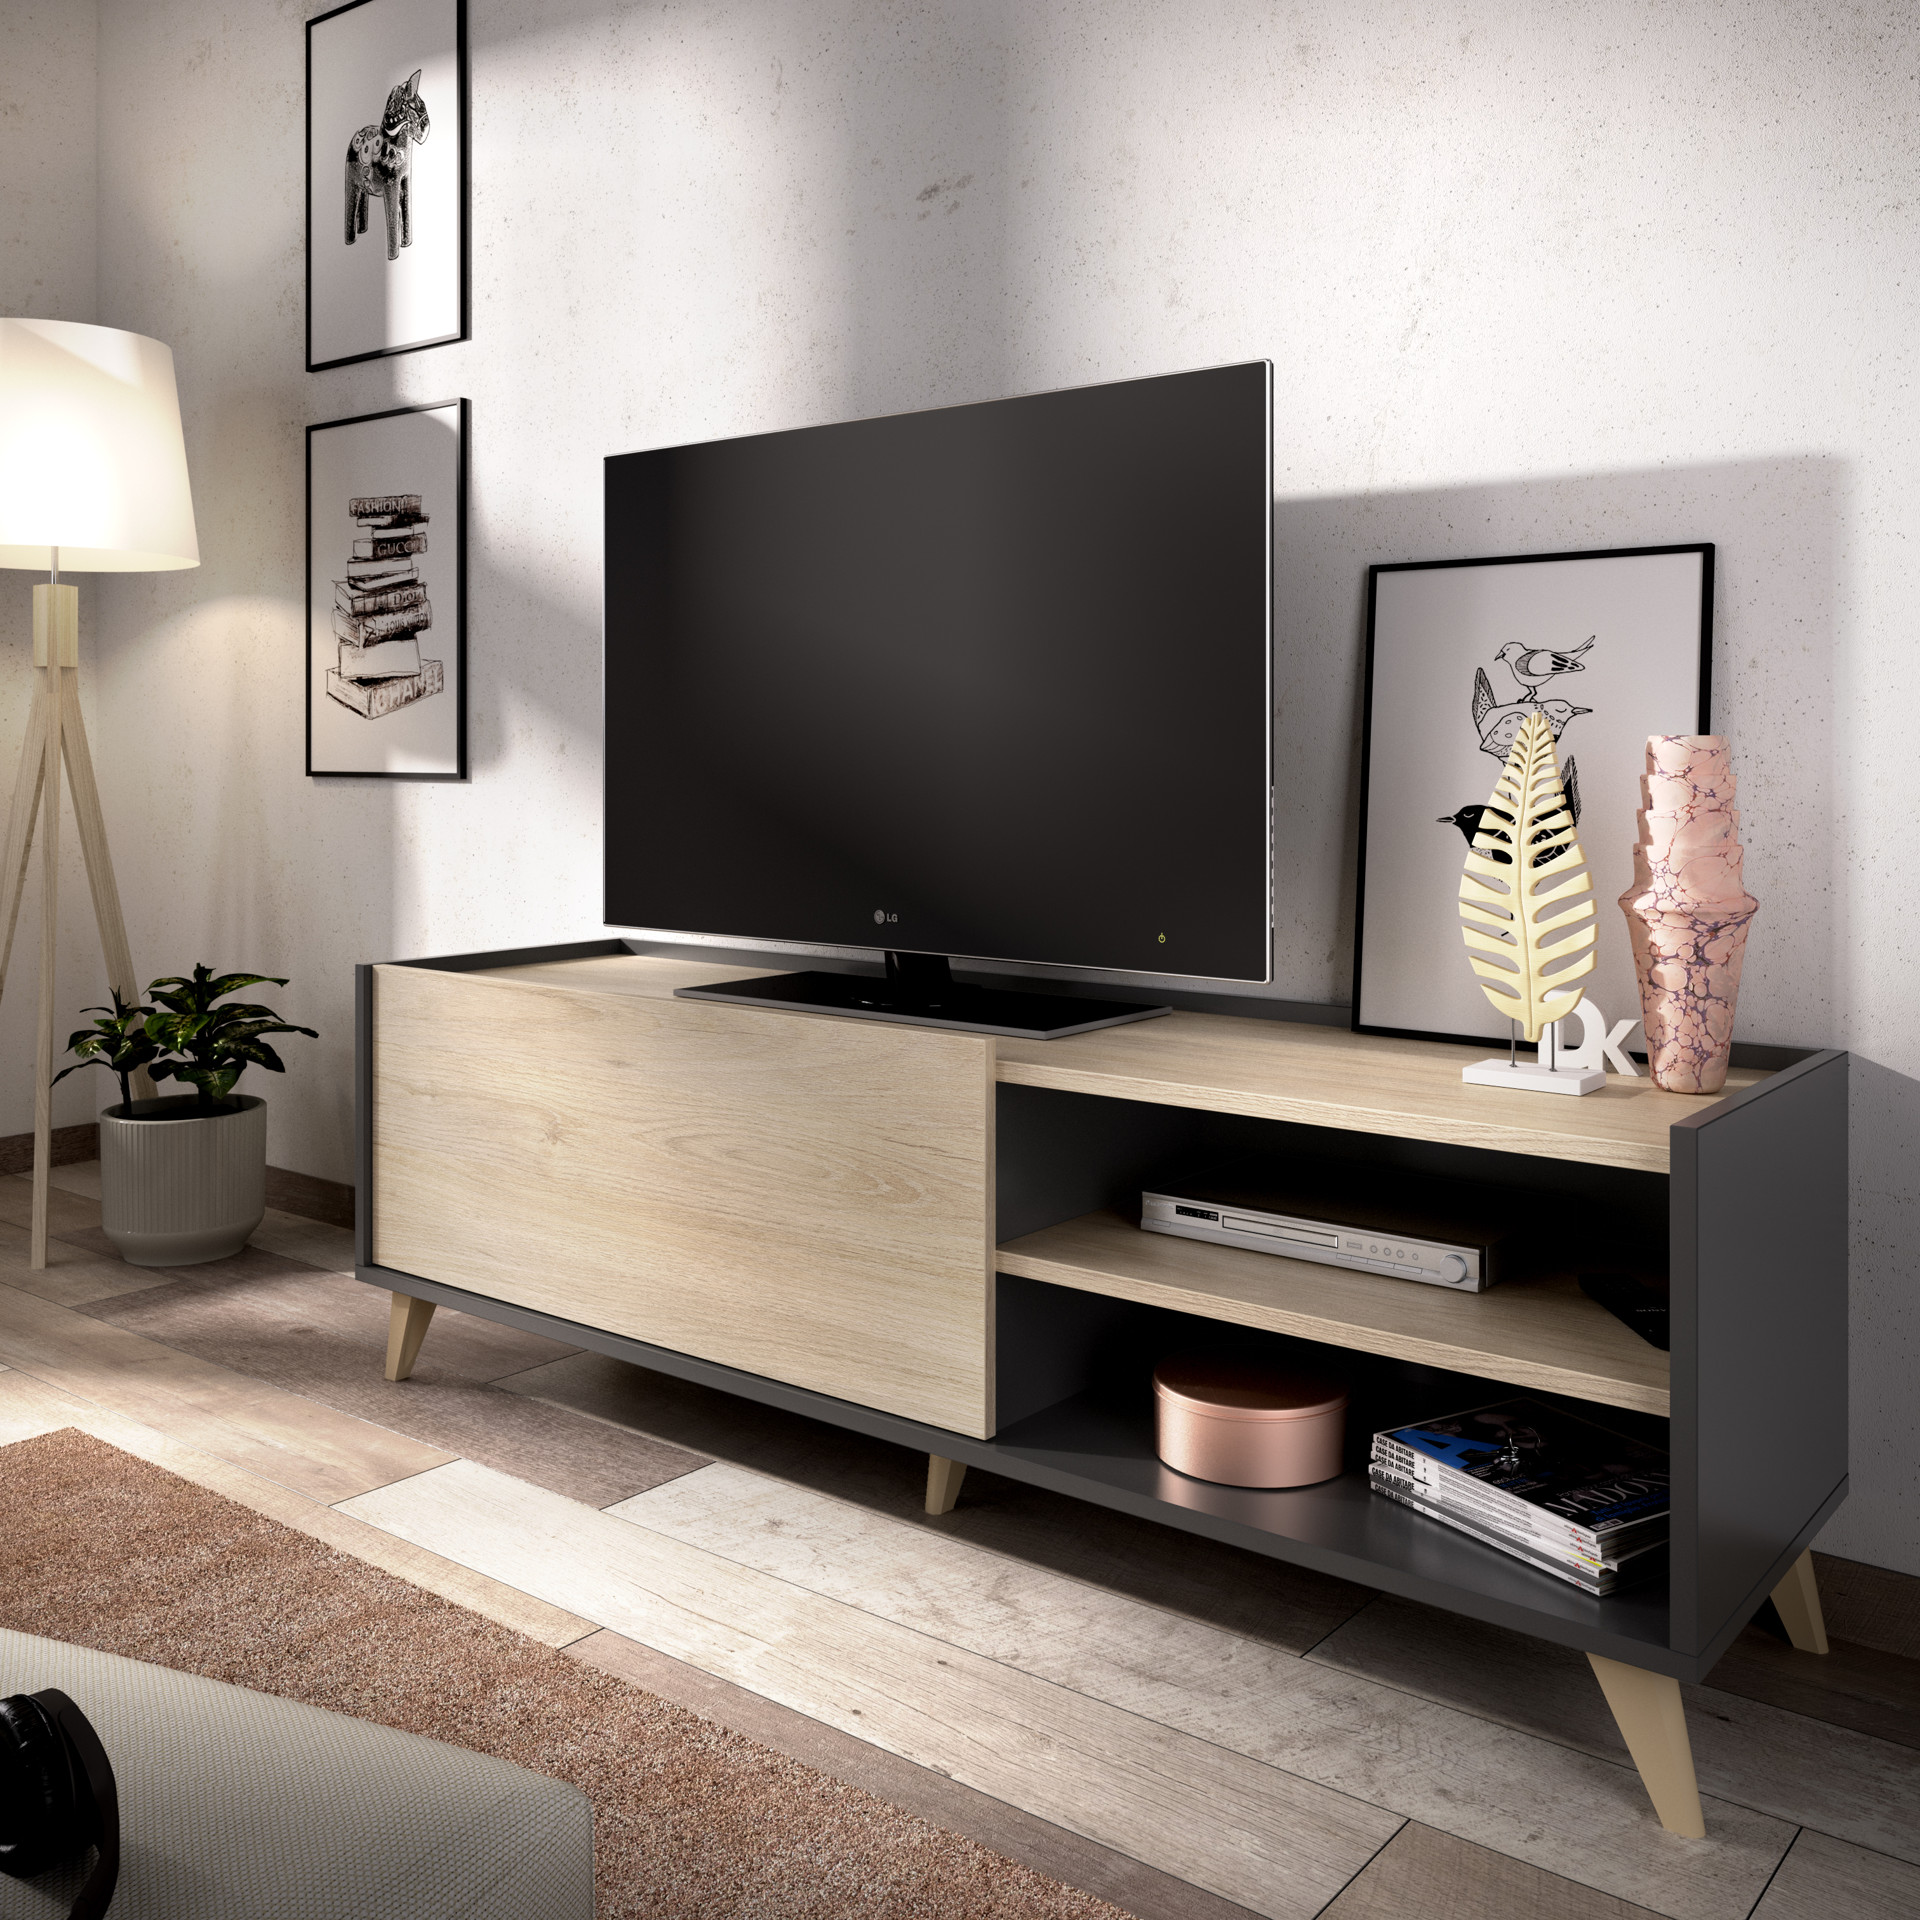 ASOMBROSO: Mueble bajo TV NESS al mejor precio 2019  Muebles para tv, Mueble  bajo, Muebles para television